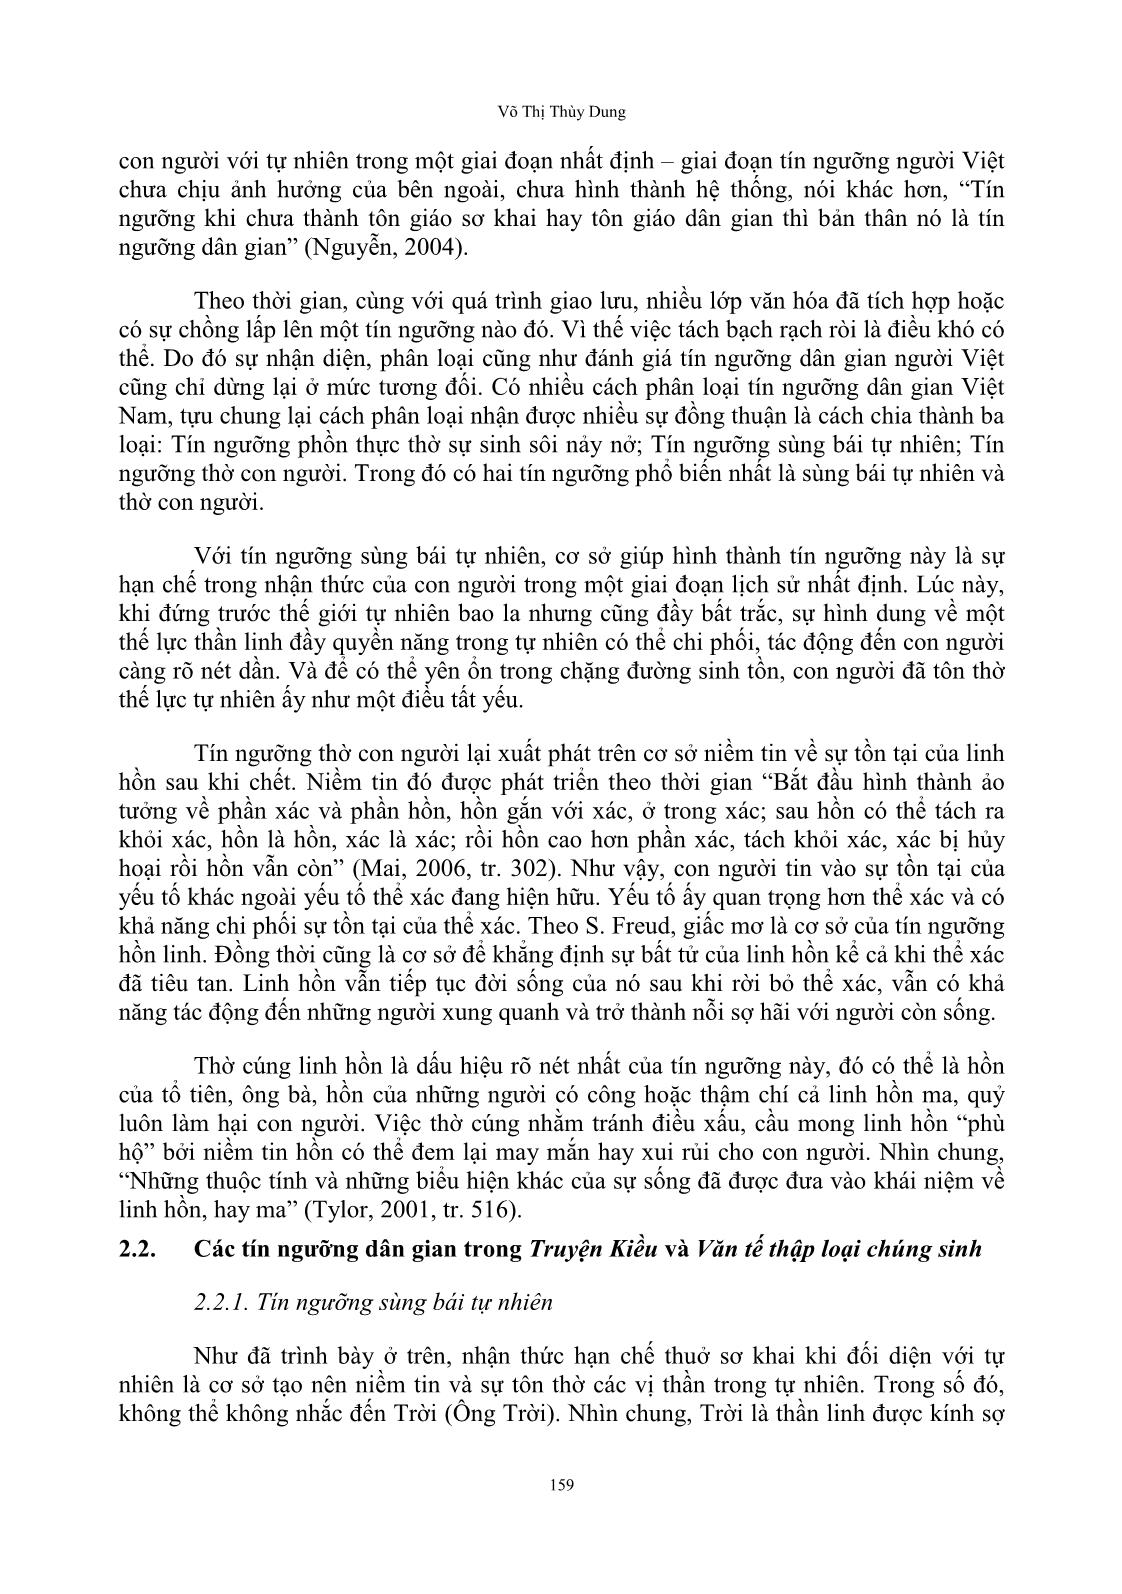 Tín ngưỡng dân gian trong truyện kiều và văn tế thập loại chúng sinh (văn chiêu hồn) của Nguyễn Du trang 5